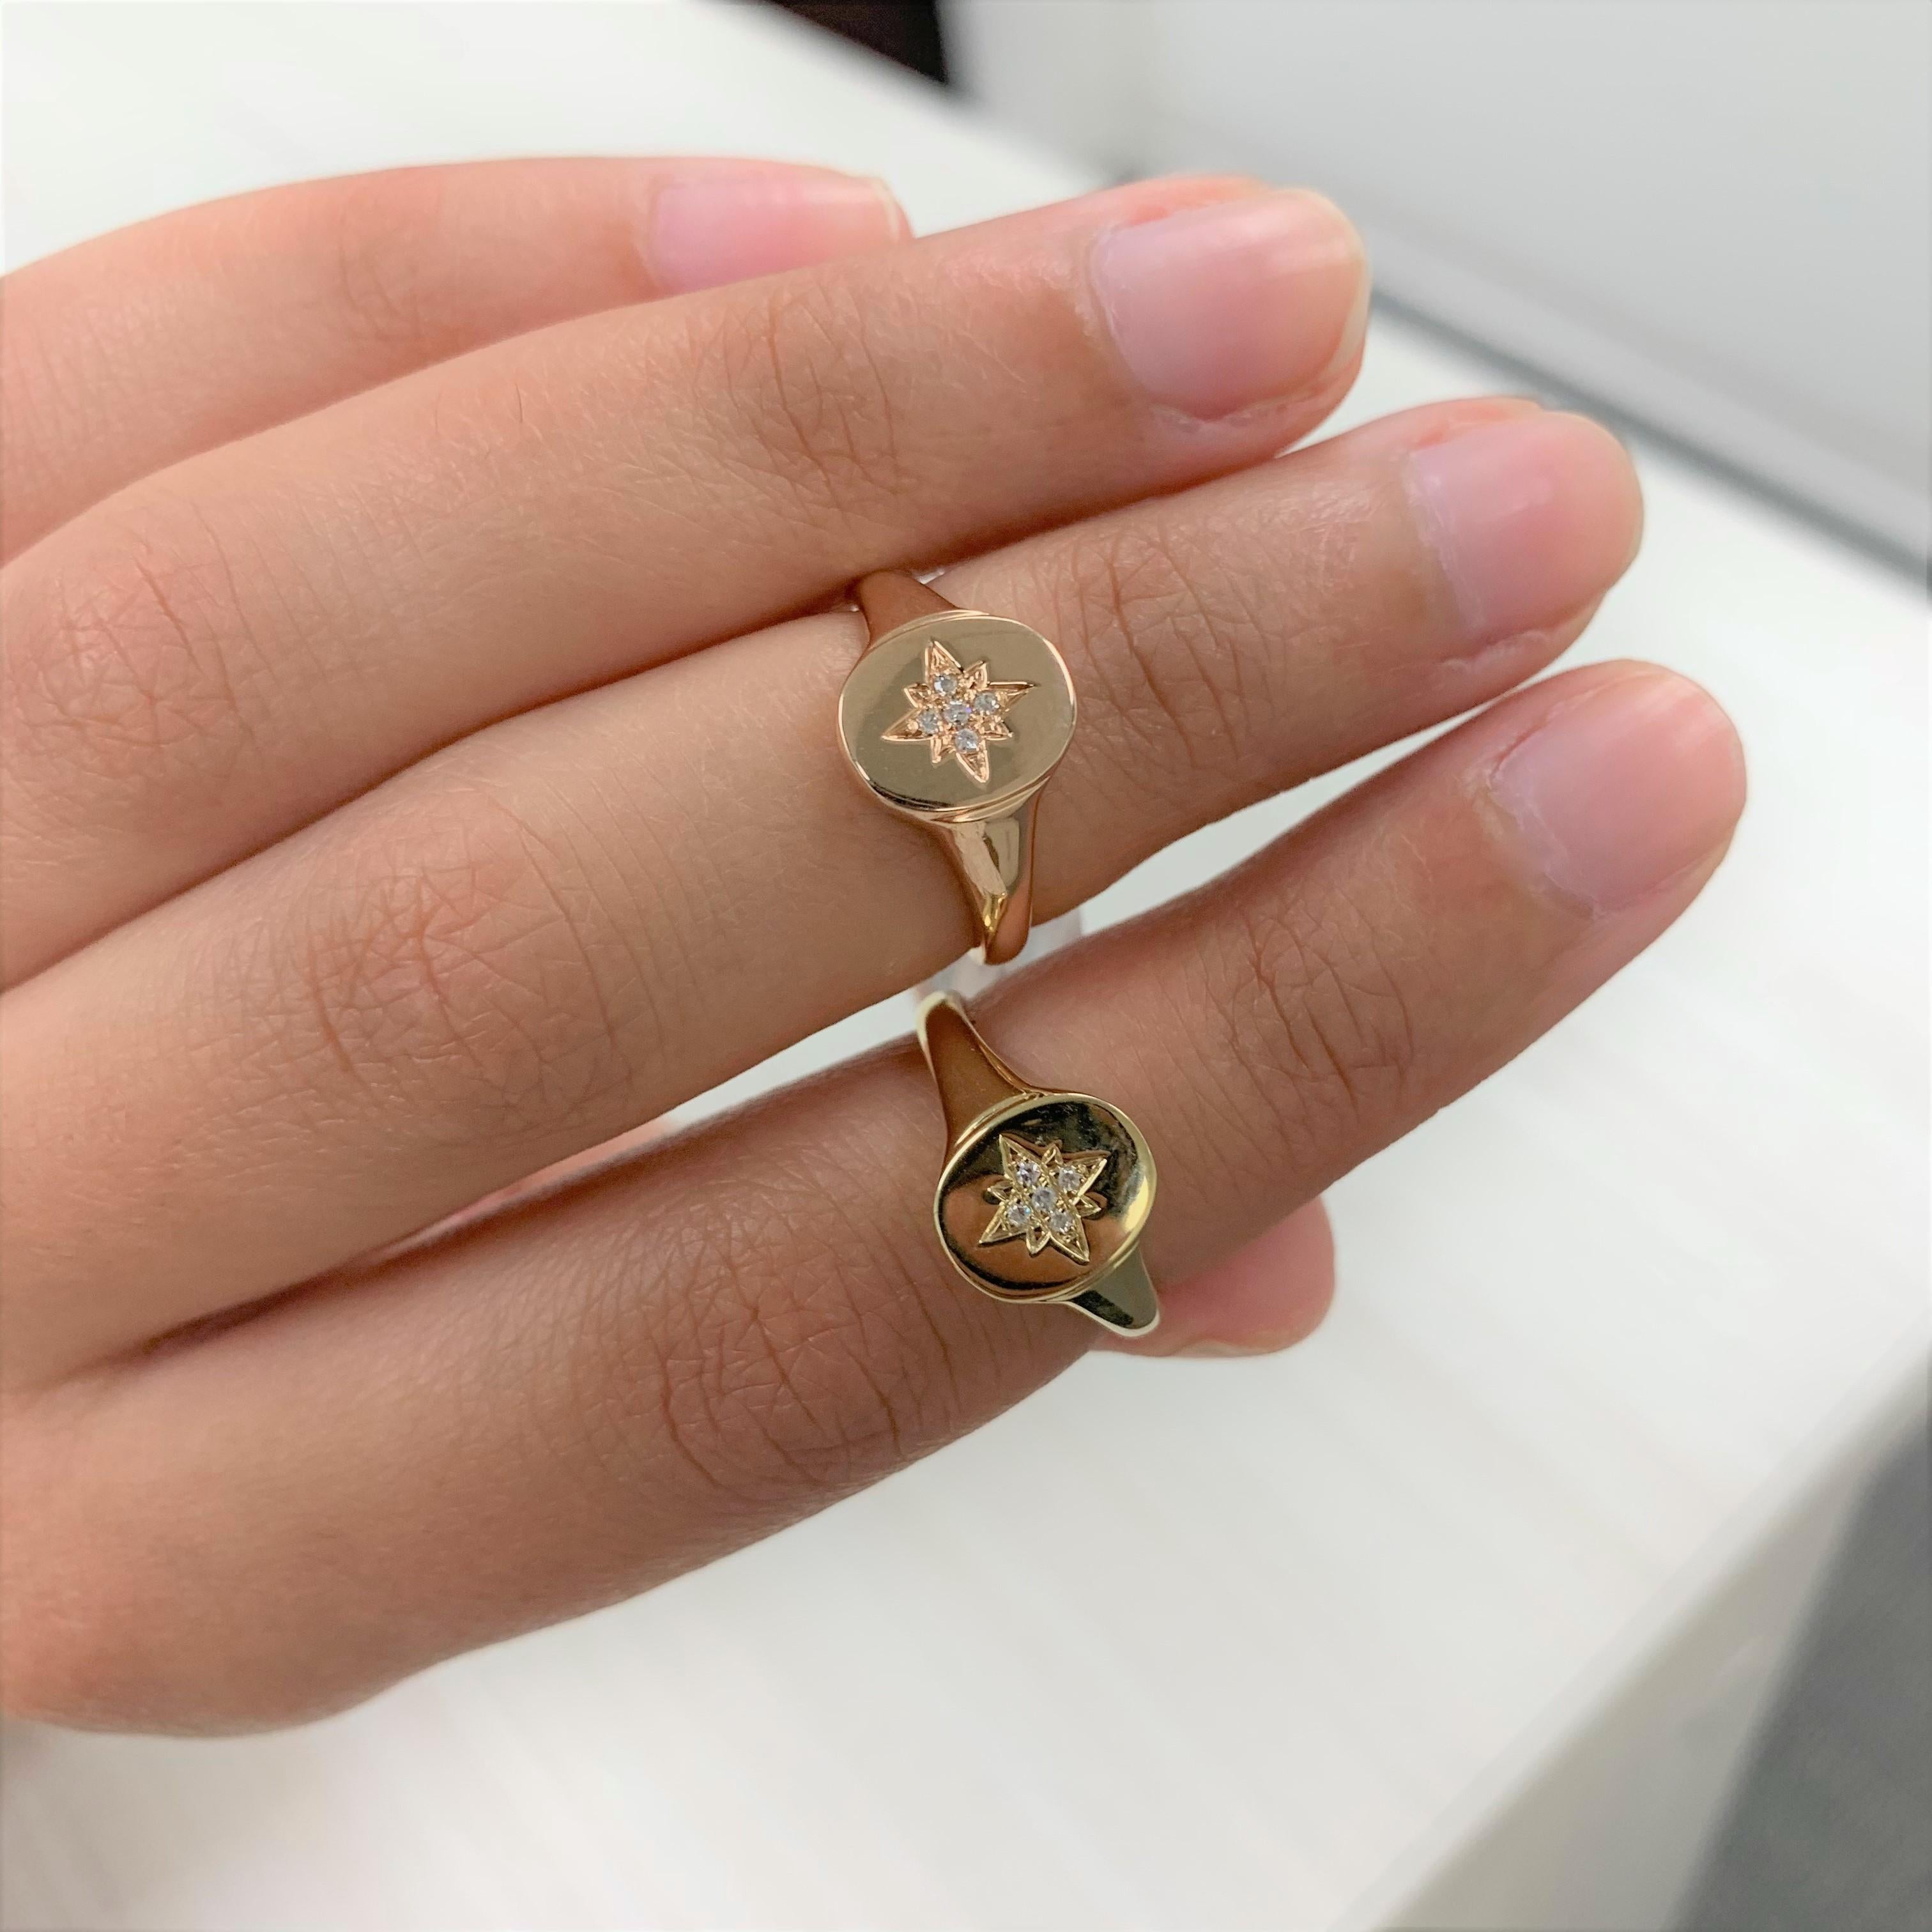 Ergänzen Sie Ihren Look mit diesem kostbaren Diamant-Siegelring! Dieser Ring aus 14-karätigem Gold ist in Gelb-, Rosé- und Weißgold erhältlich und besteht aus 0,02 Karat natürlichen runden Diamanten. Es ist ein pinker Ring der Größe 3.75.
-14K